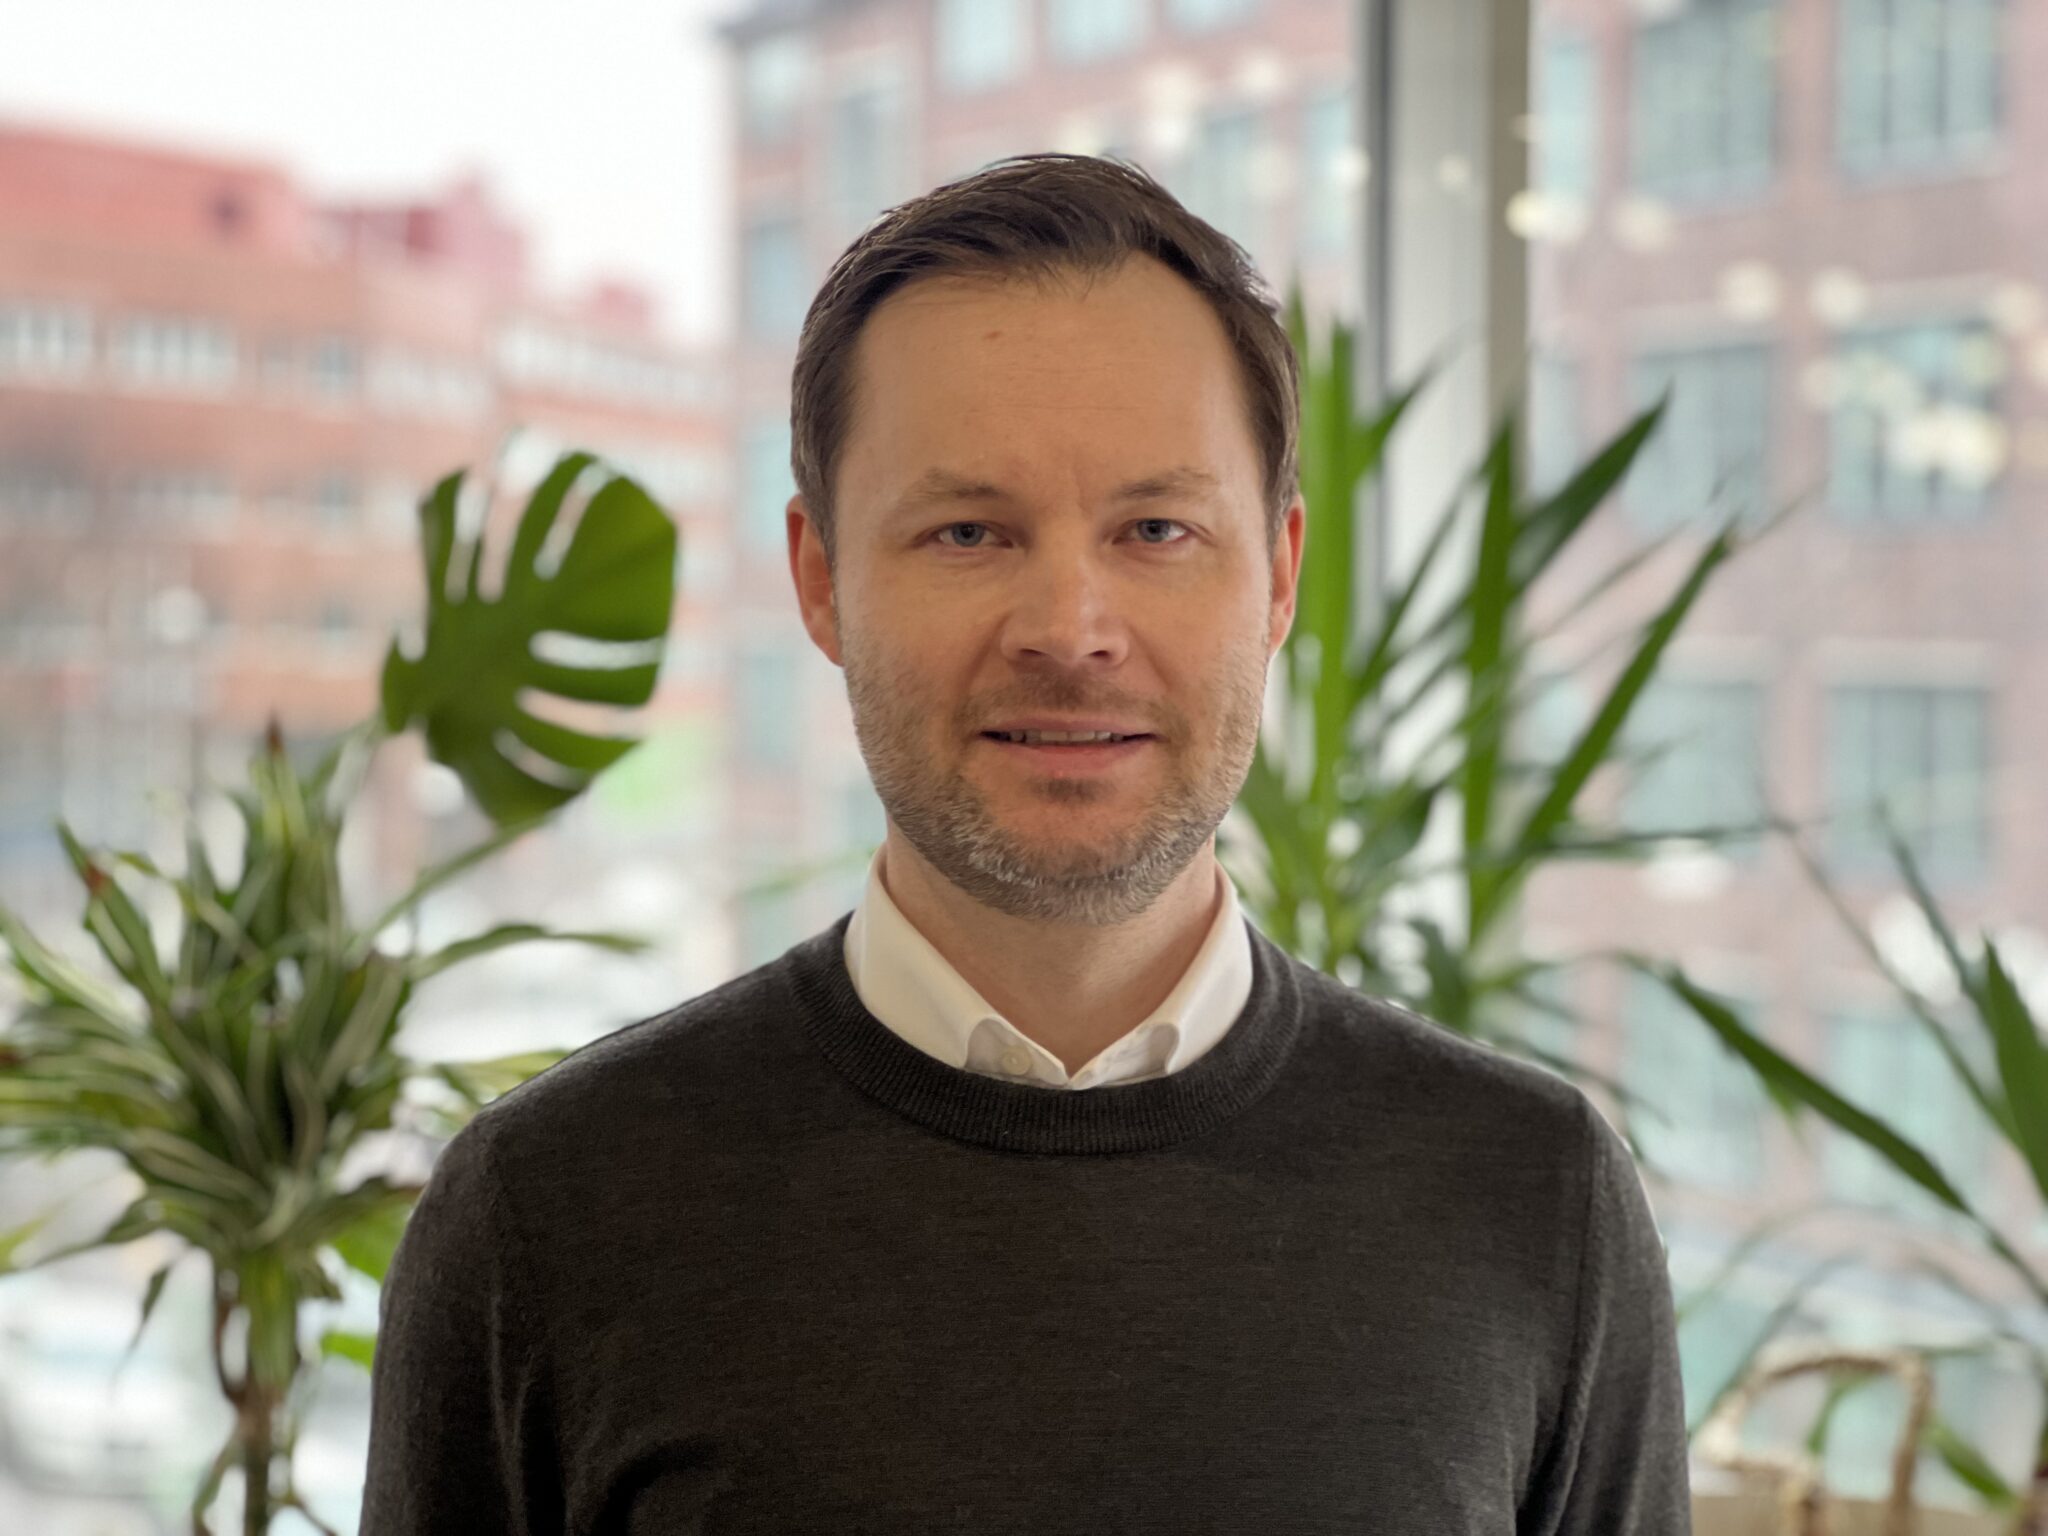 Nimitykset: Henrik Neiramasta Avoin.Systemsin uusi Finance Excellence Lead